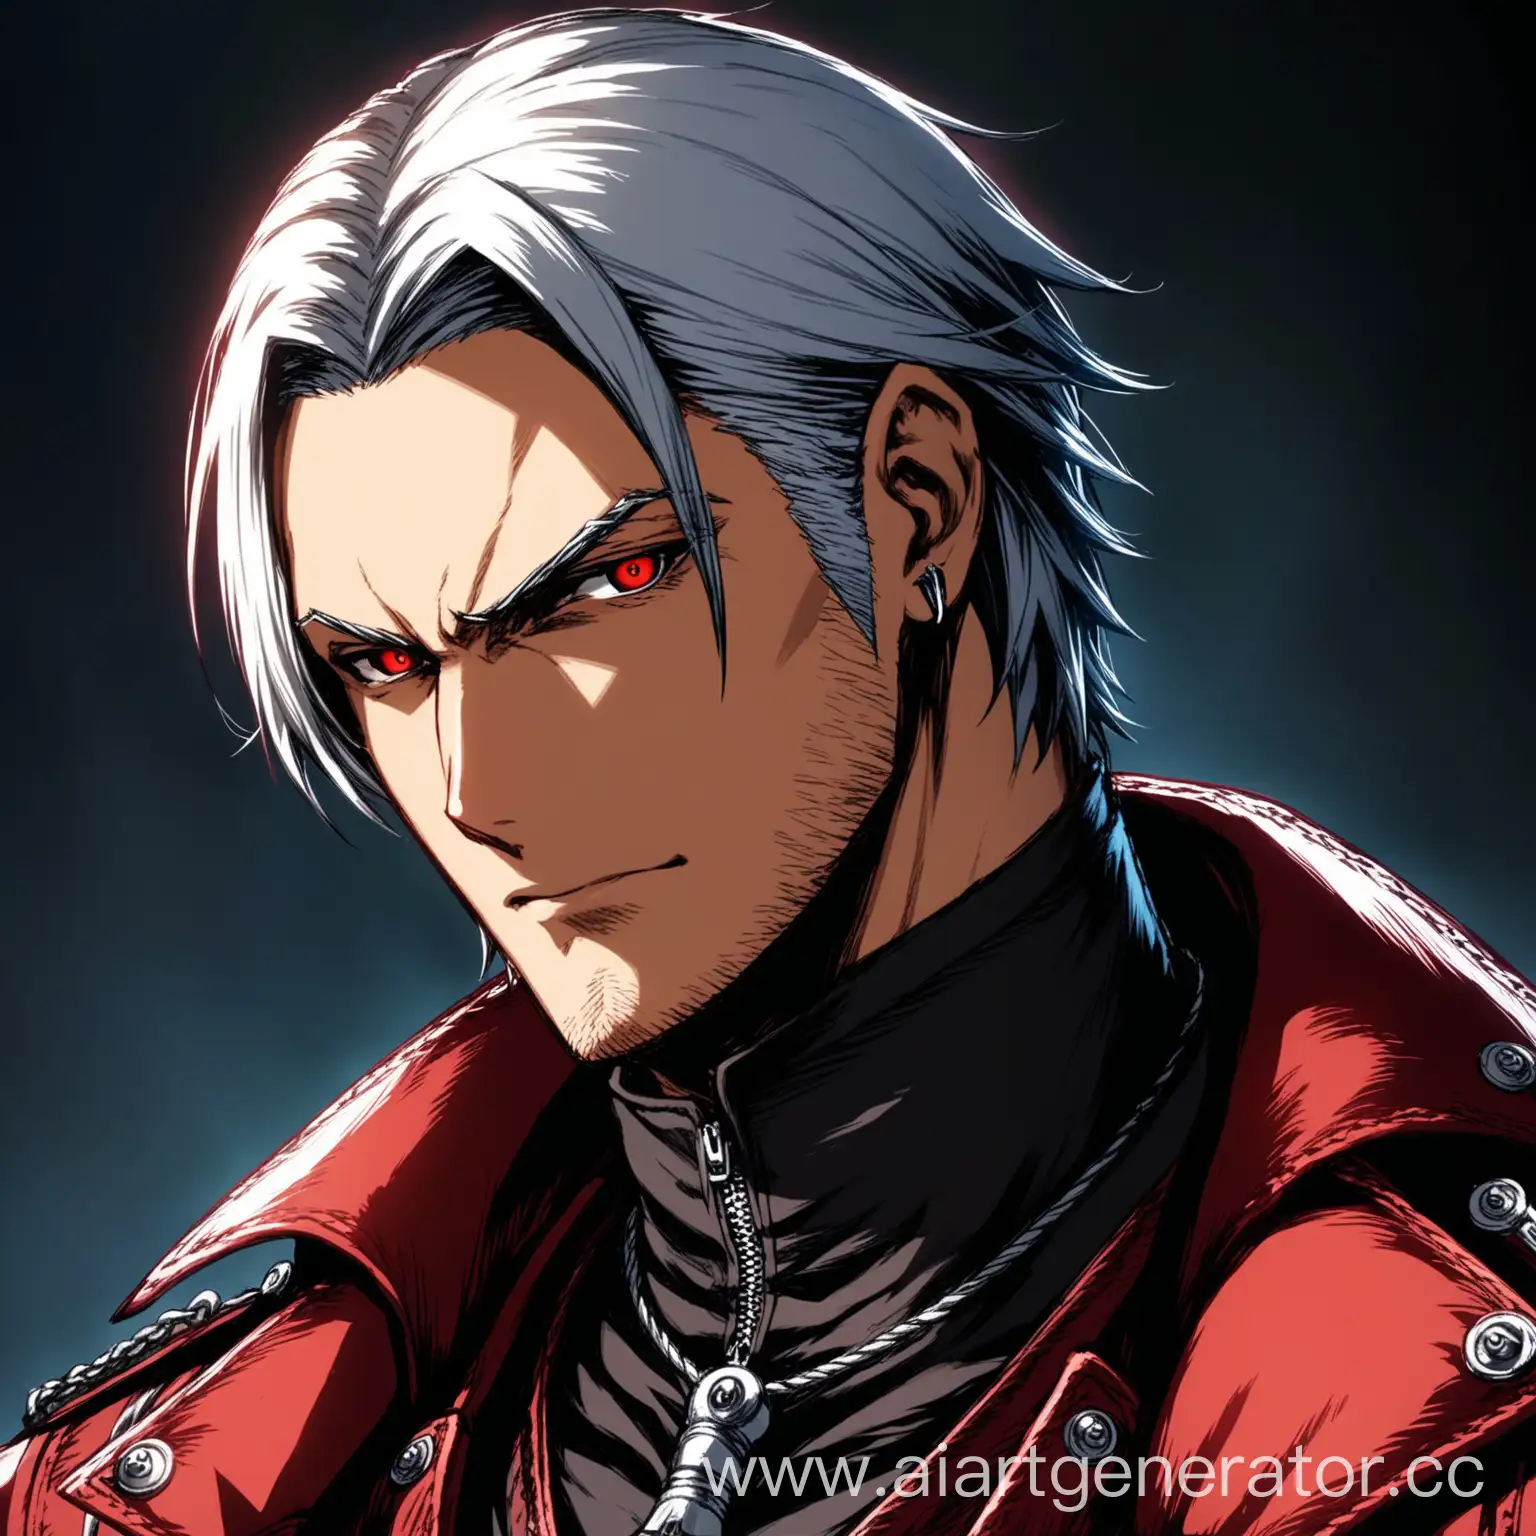 изображение профиля с лицом Редгрейв Данте из игры Devil may Cry в Devil trigger